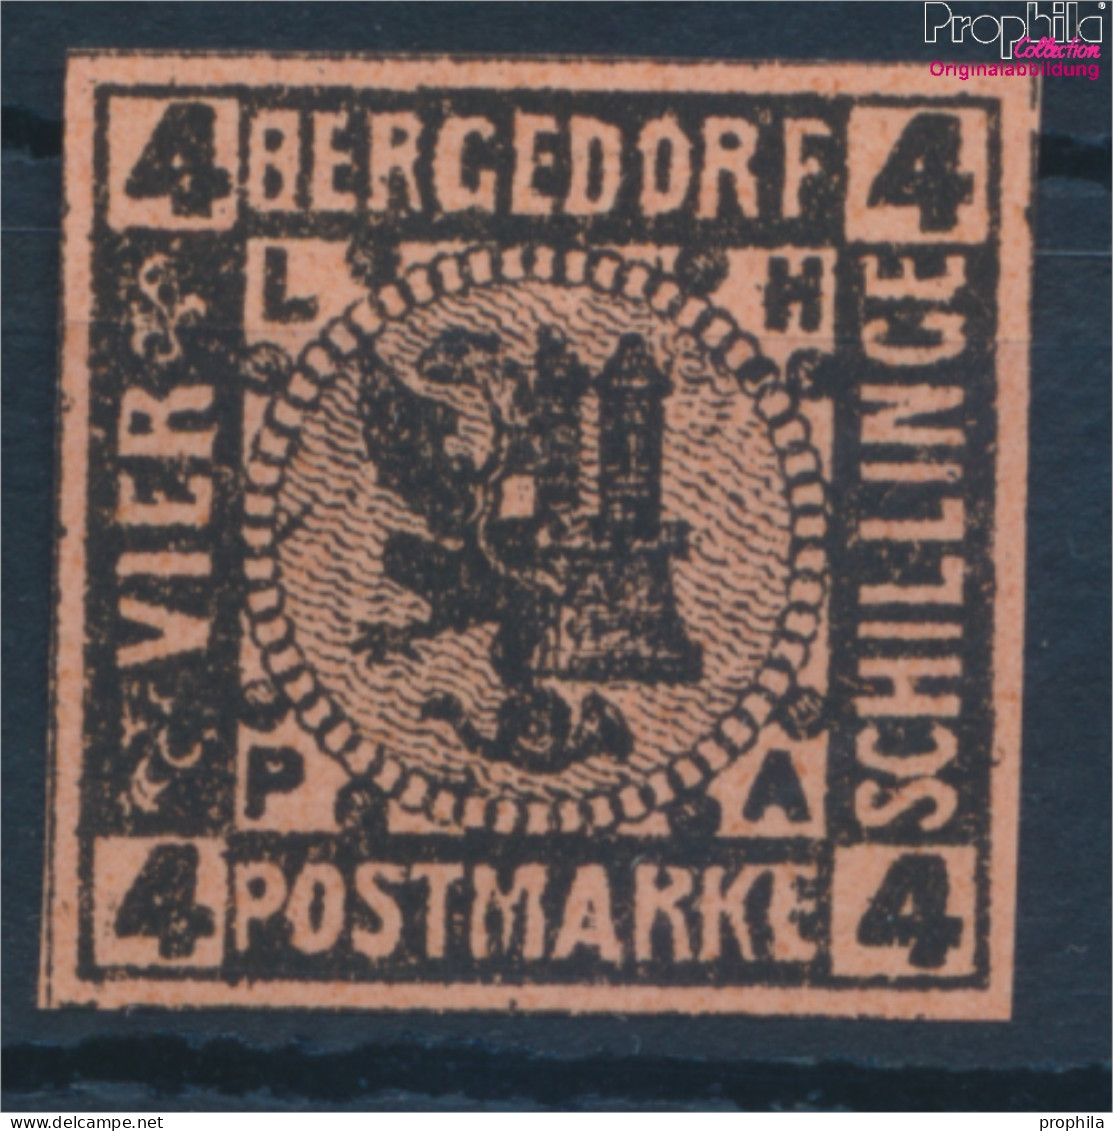 Bergedorf 5ND Neu- Bzw. Nachdruck Ungebraucht 1887 Wappen (10336019 - Bergedorf